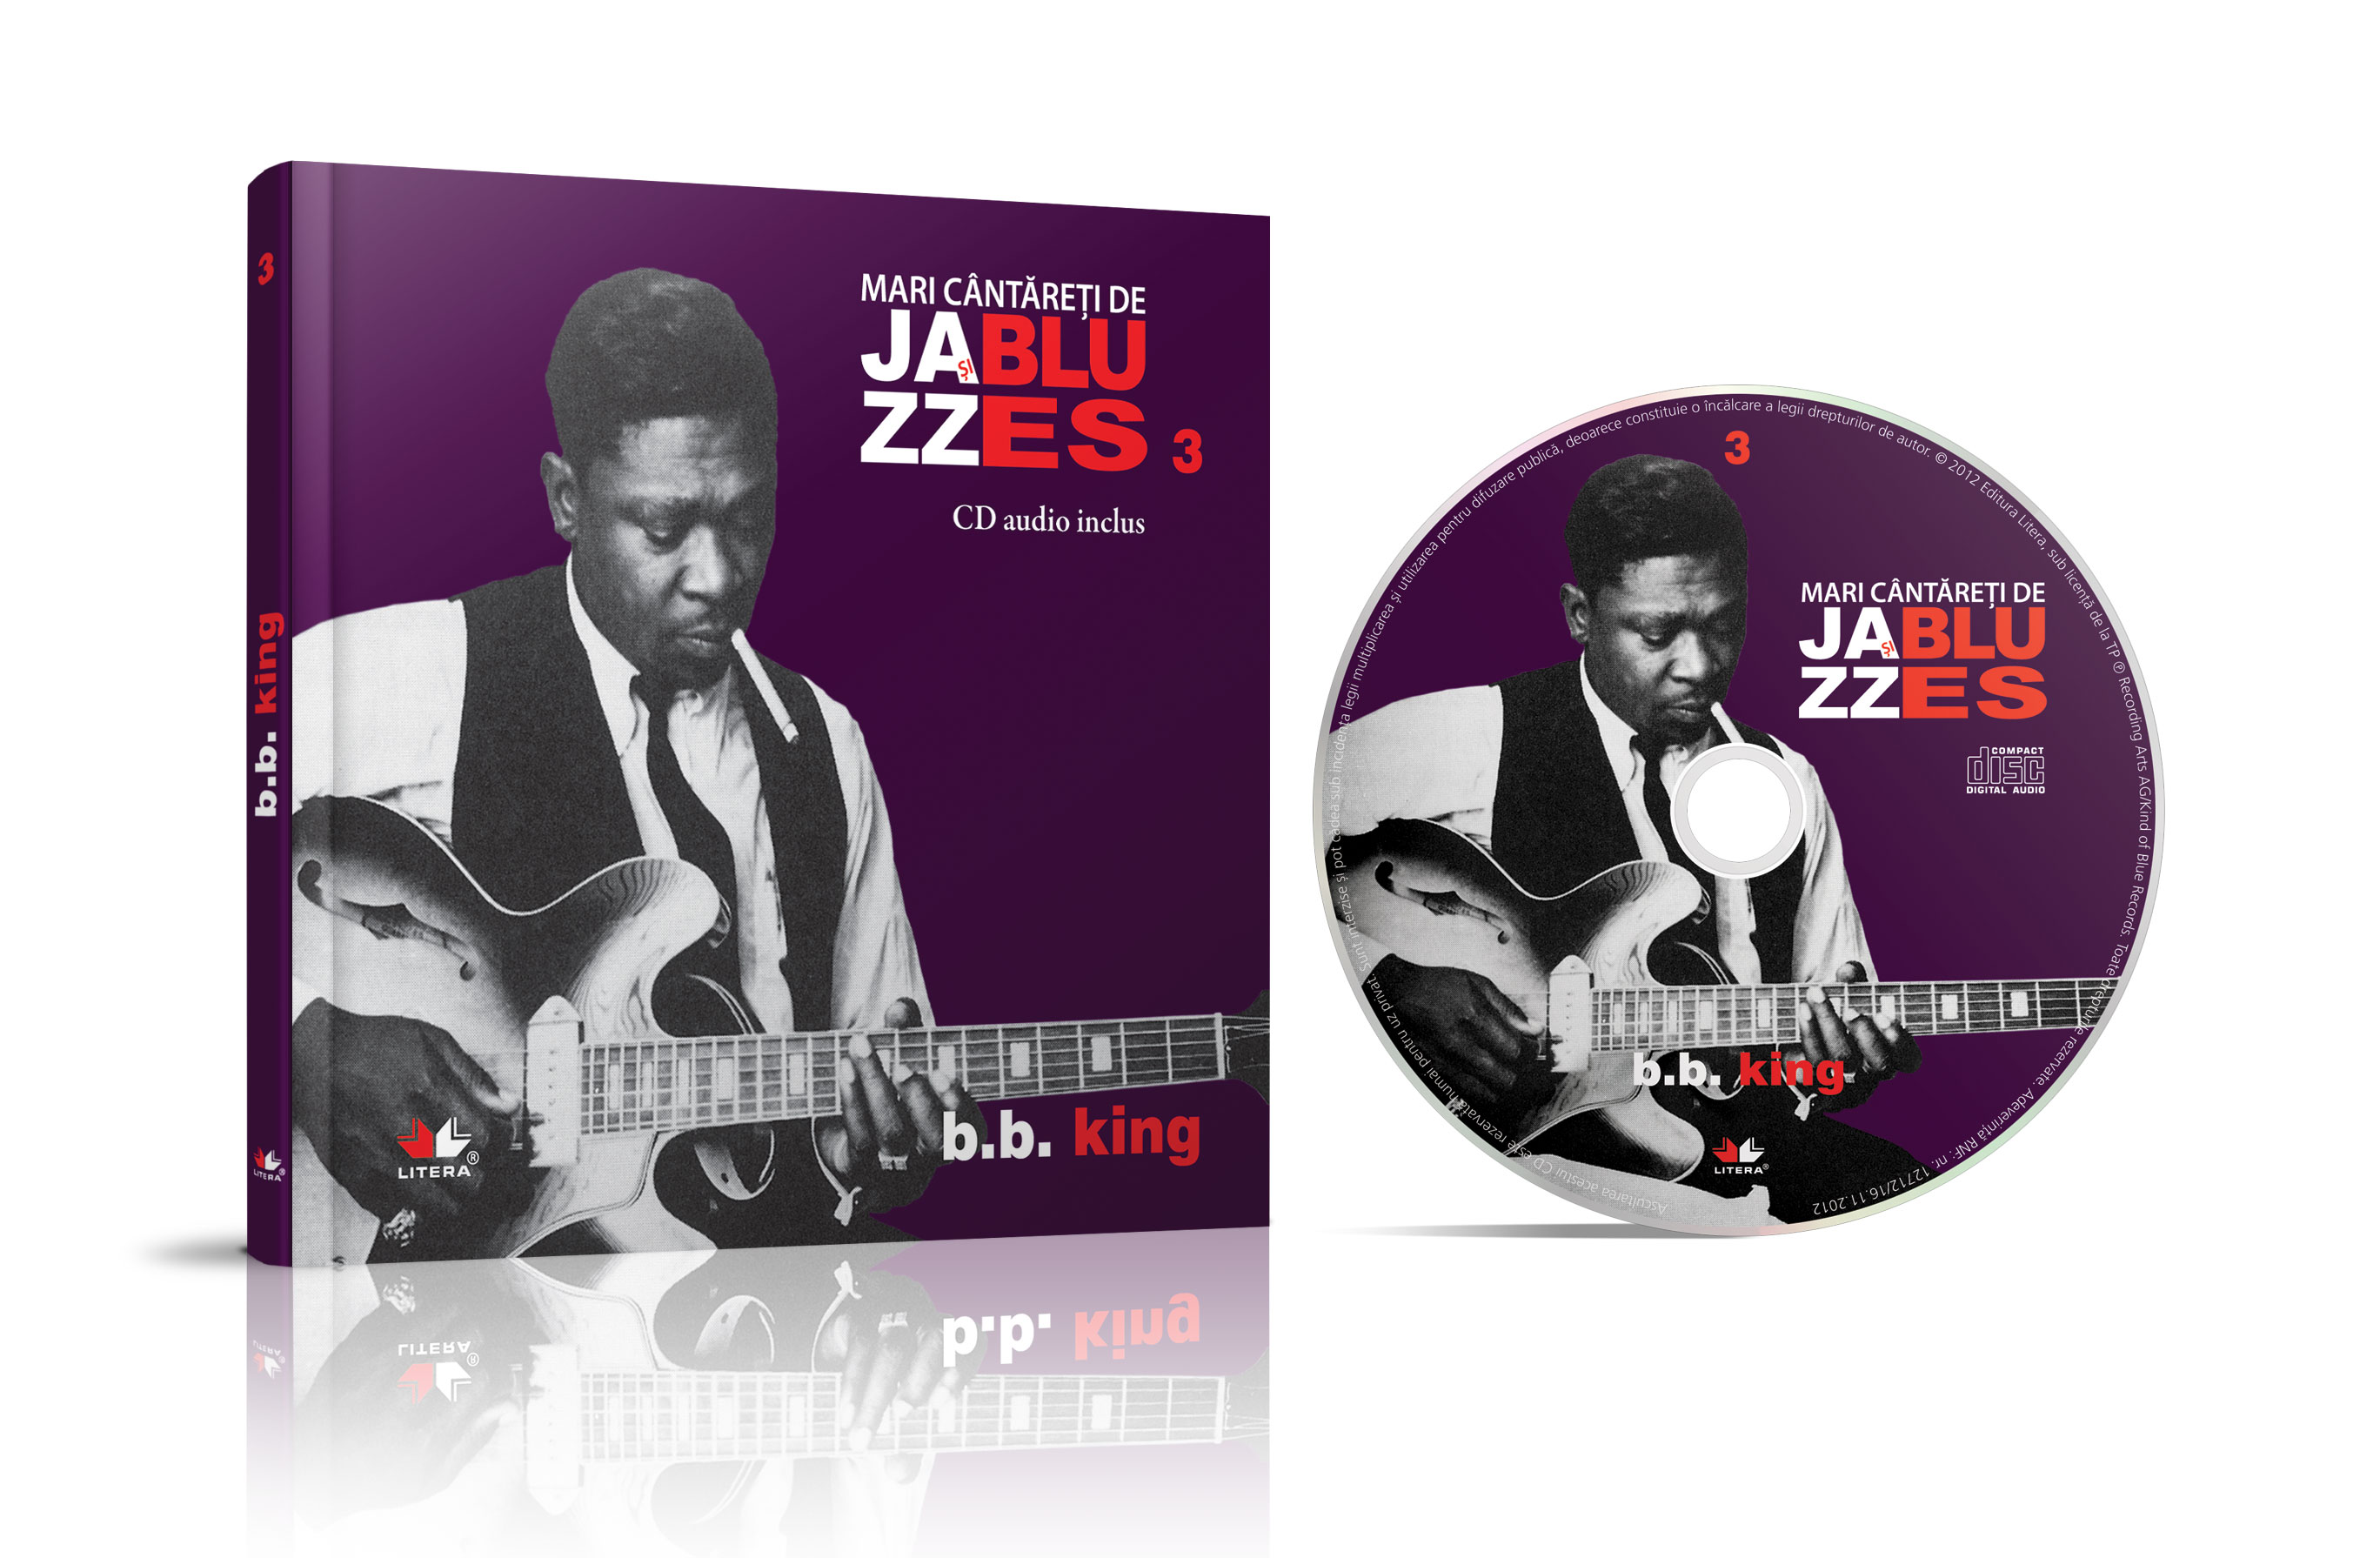 Mari cântăreți de jazz și blues. b.b. king. carte + cd audio